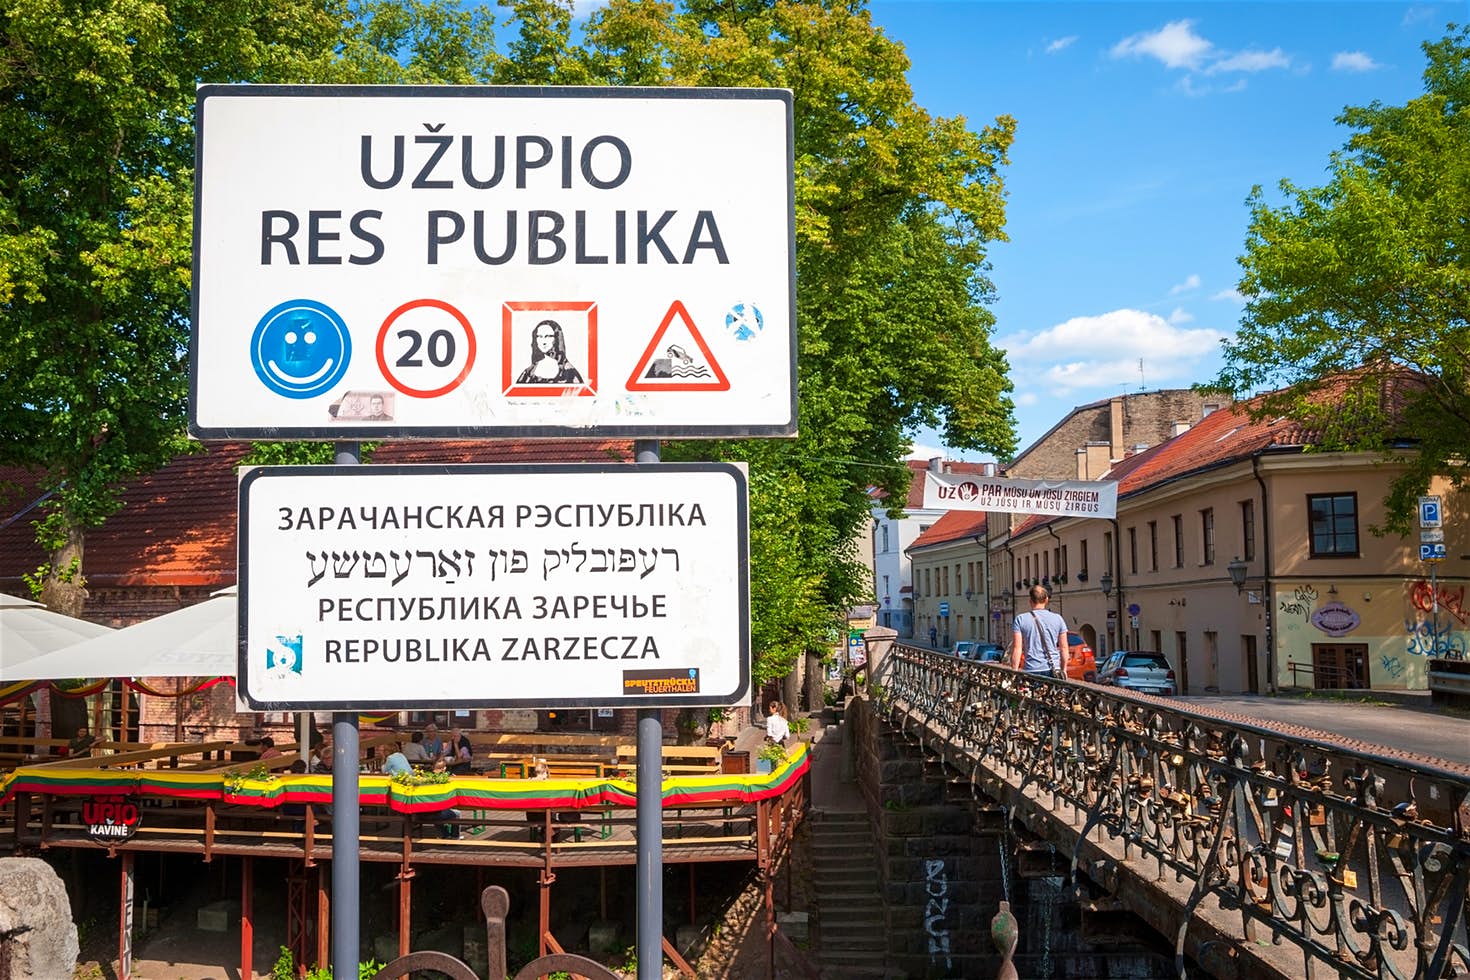 border-sign-uzupis-vilnius-cs-ce24d4d70562.jpg